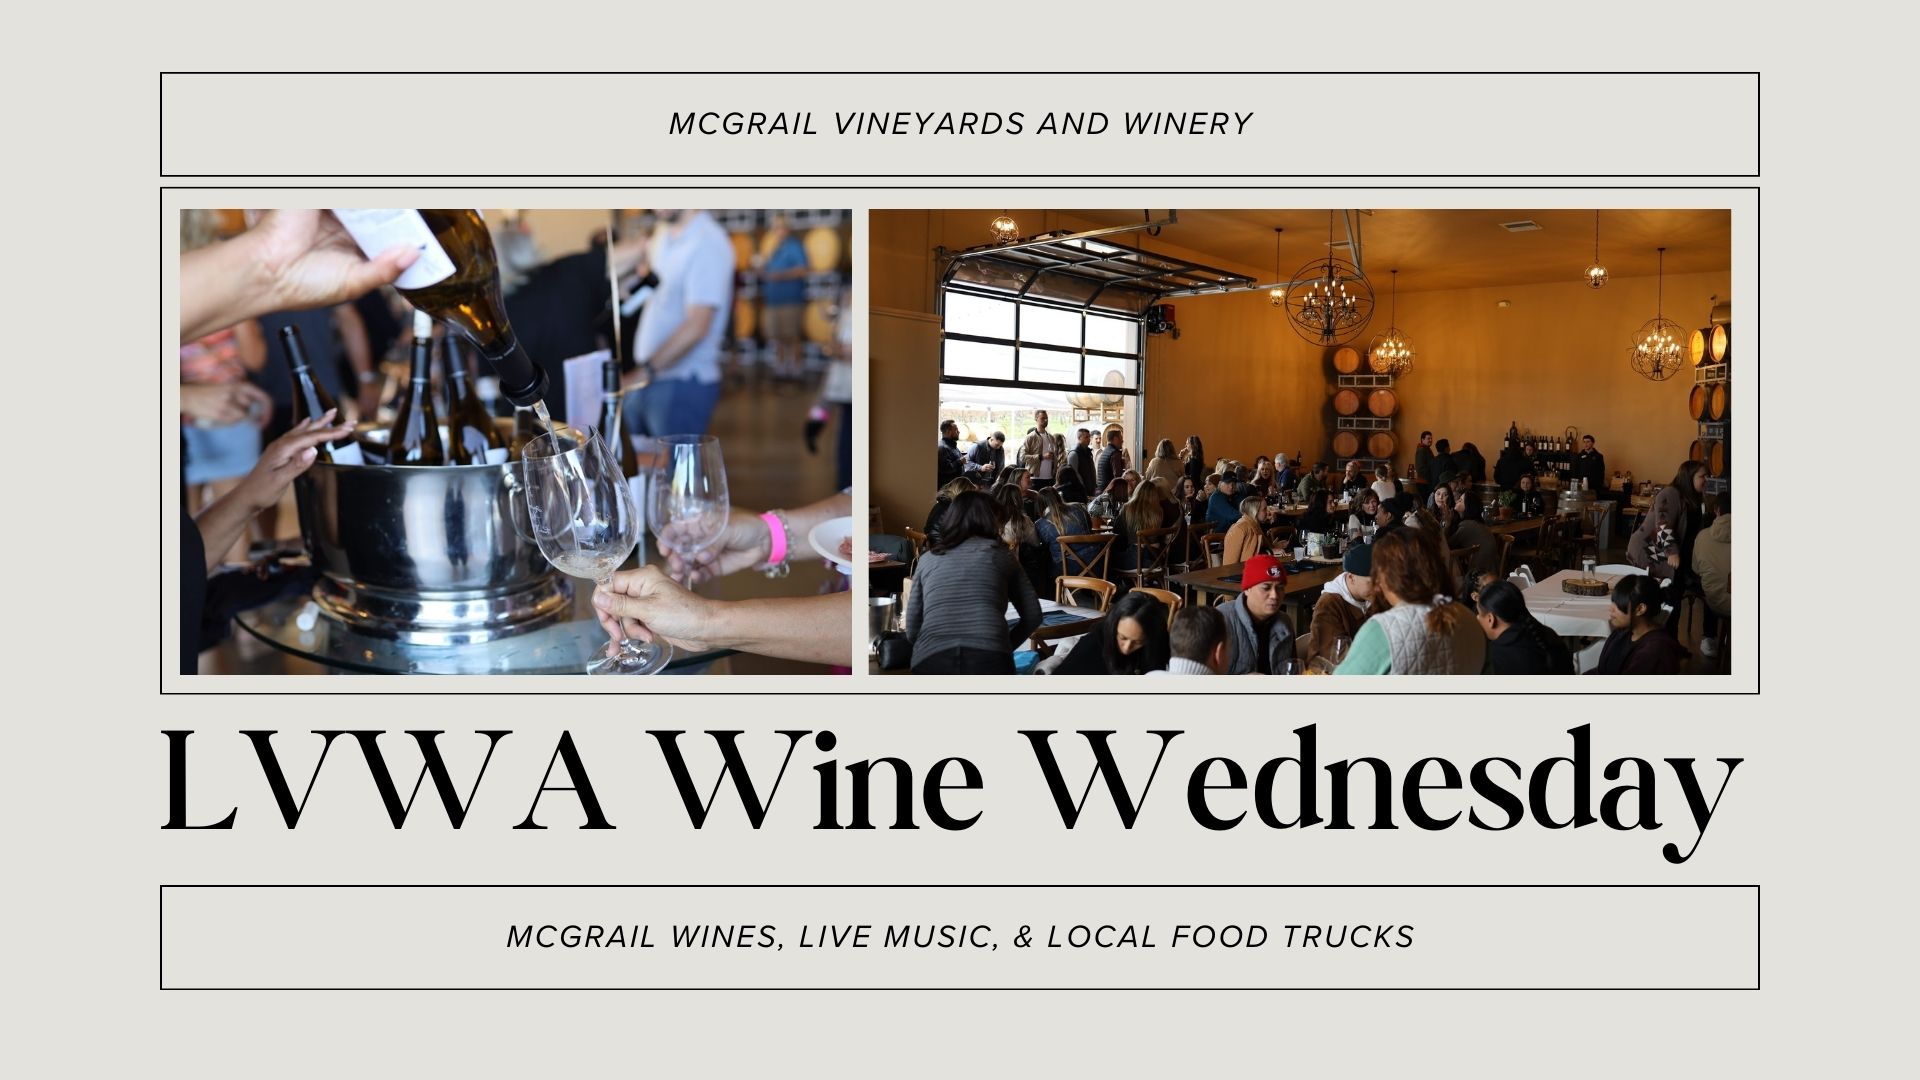 LVWA Wine Wednesday at McGrail Vineyards